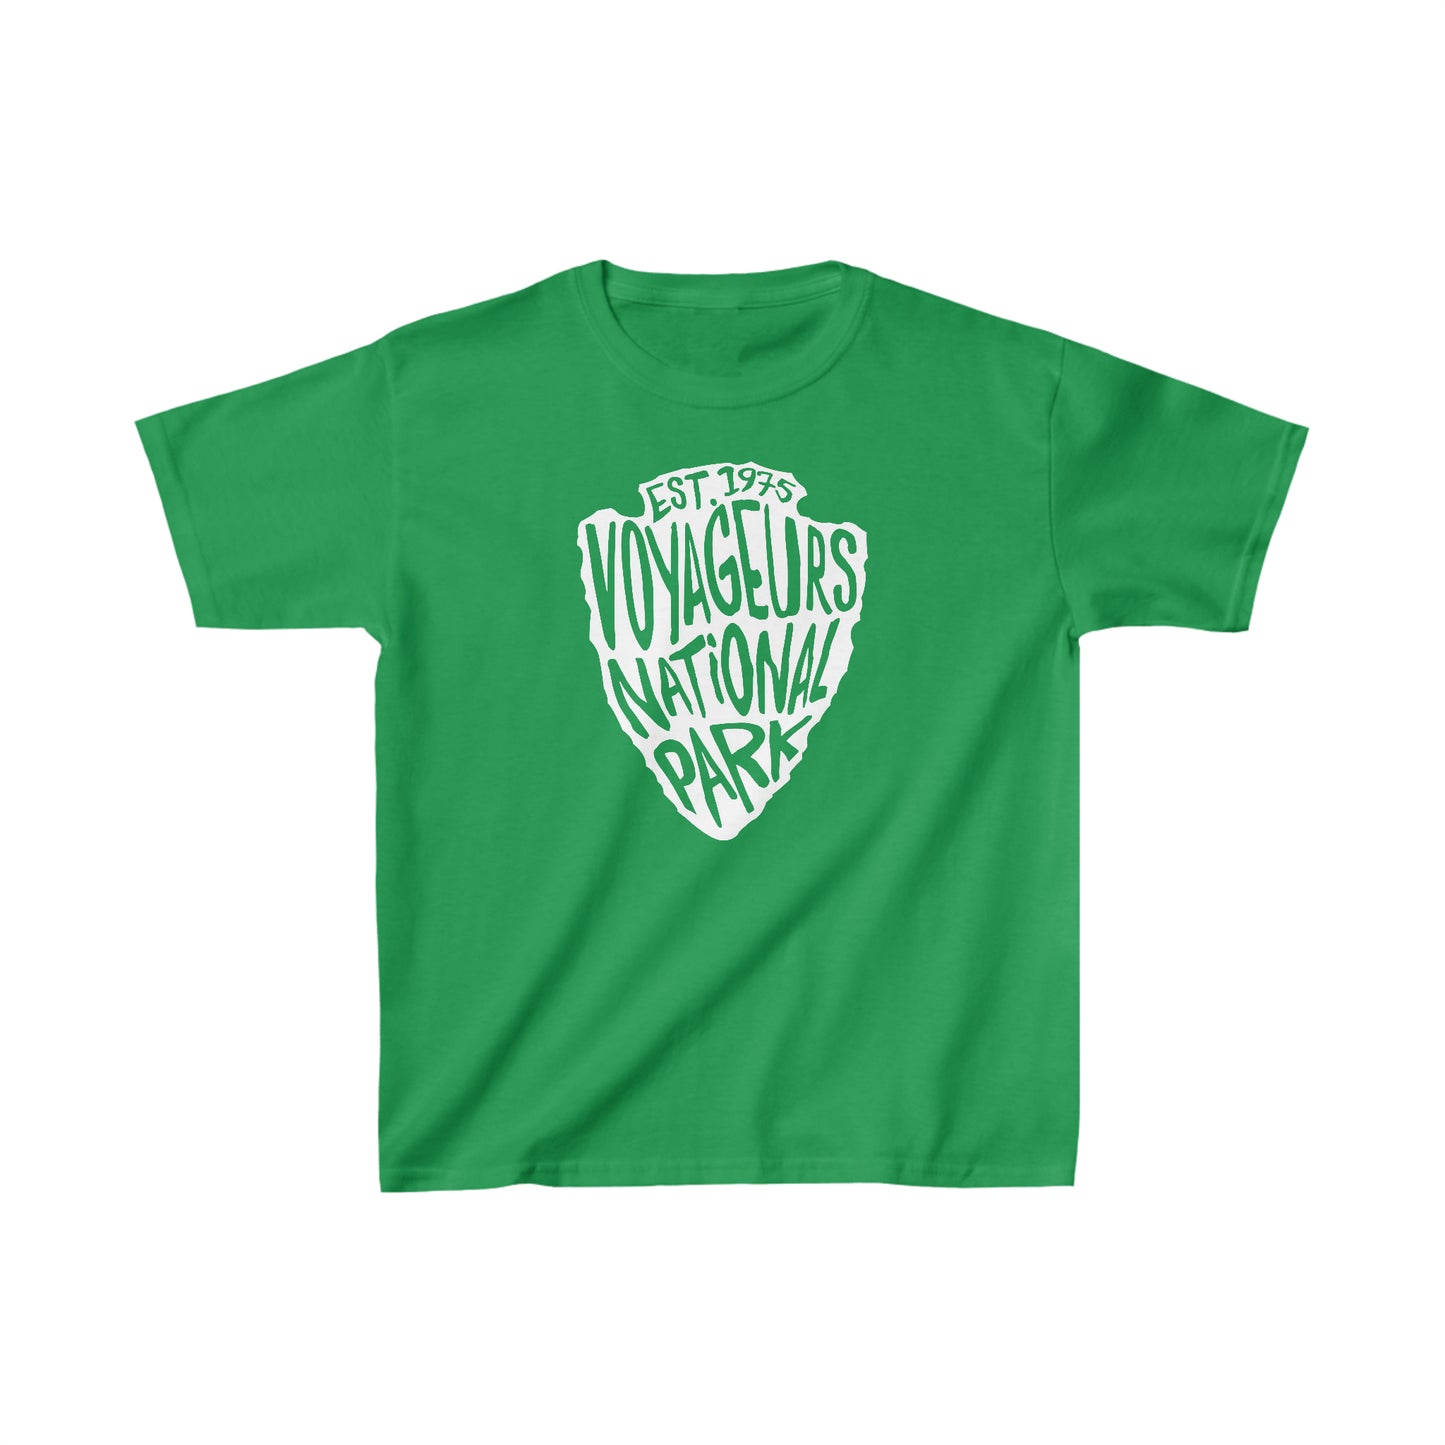 Voyageurs National Park Child T-Shirt - Arrowhead Design